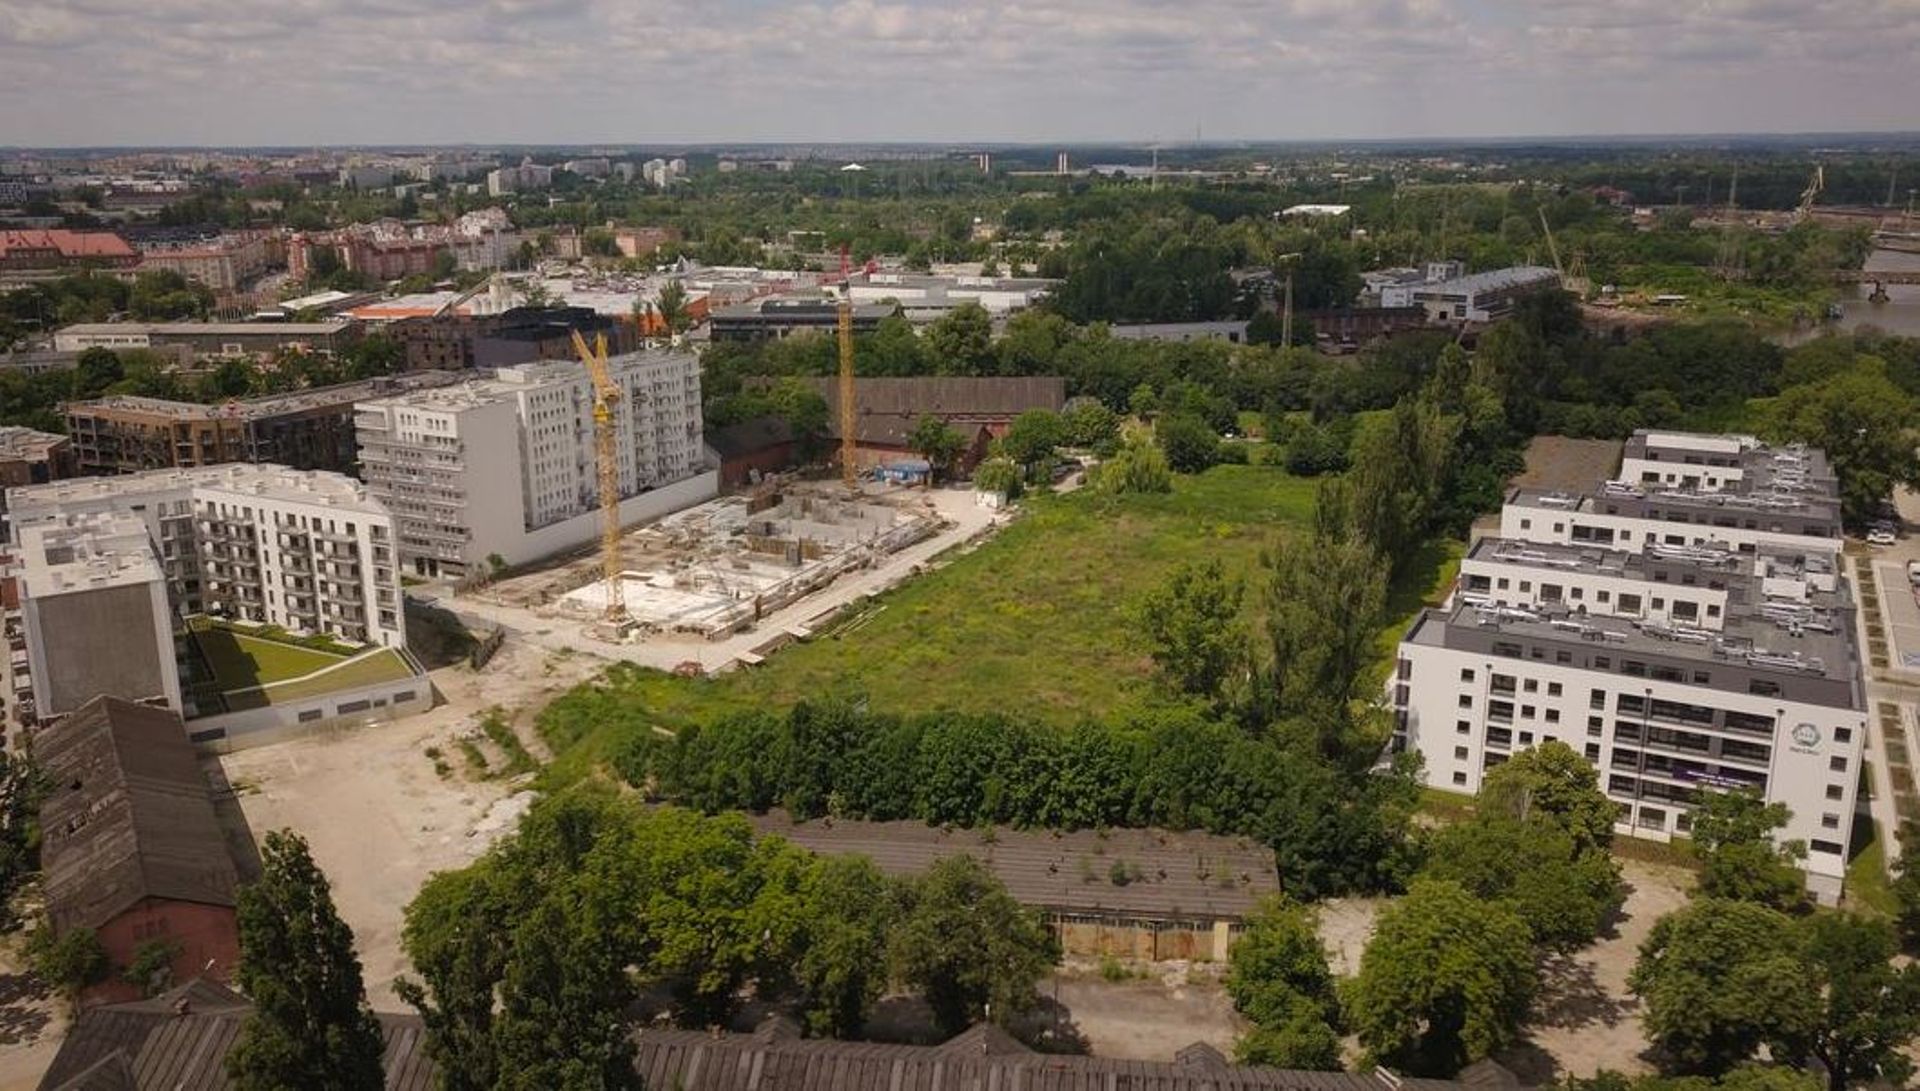 Wrocław: Nowy park i szkoła. Miasto odkupiło działki od wojska